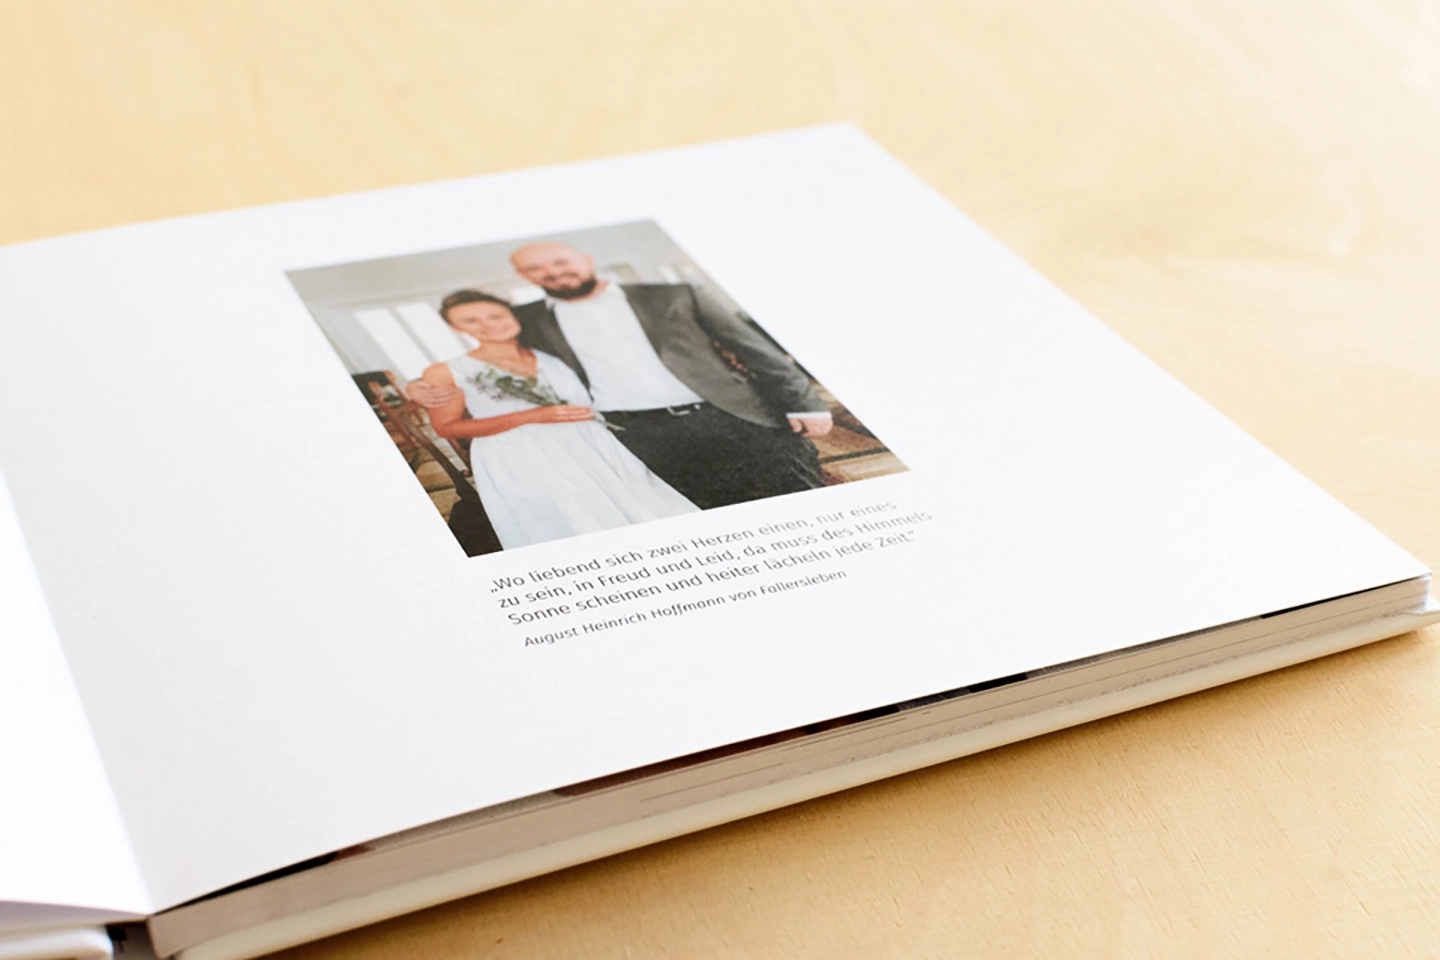 Innenseite aus Hochzeitsbuch zeigt junges Ehepaar und Zitatausschnitt als Beispiel für Typografie in der Gestaltung